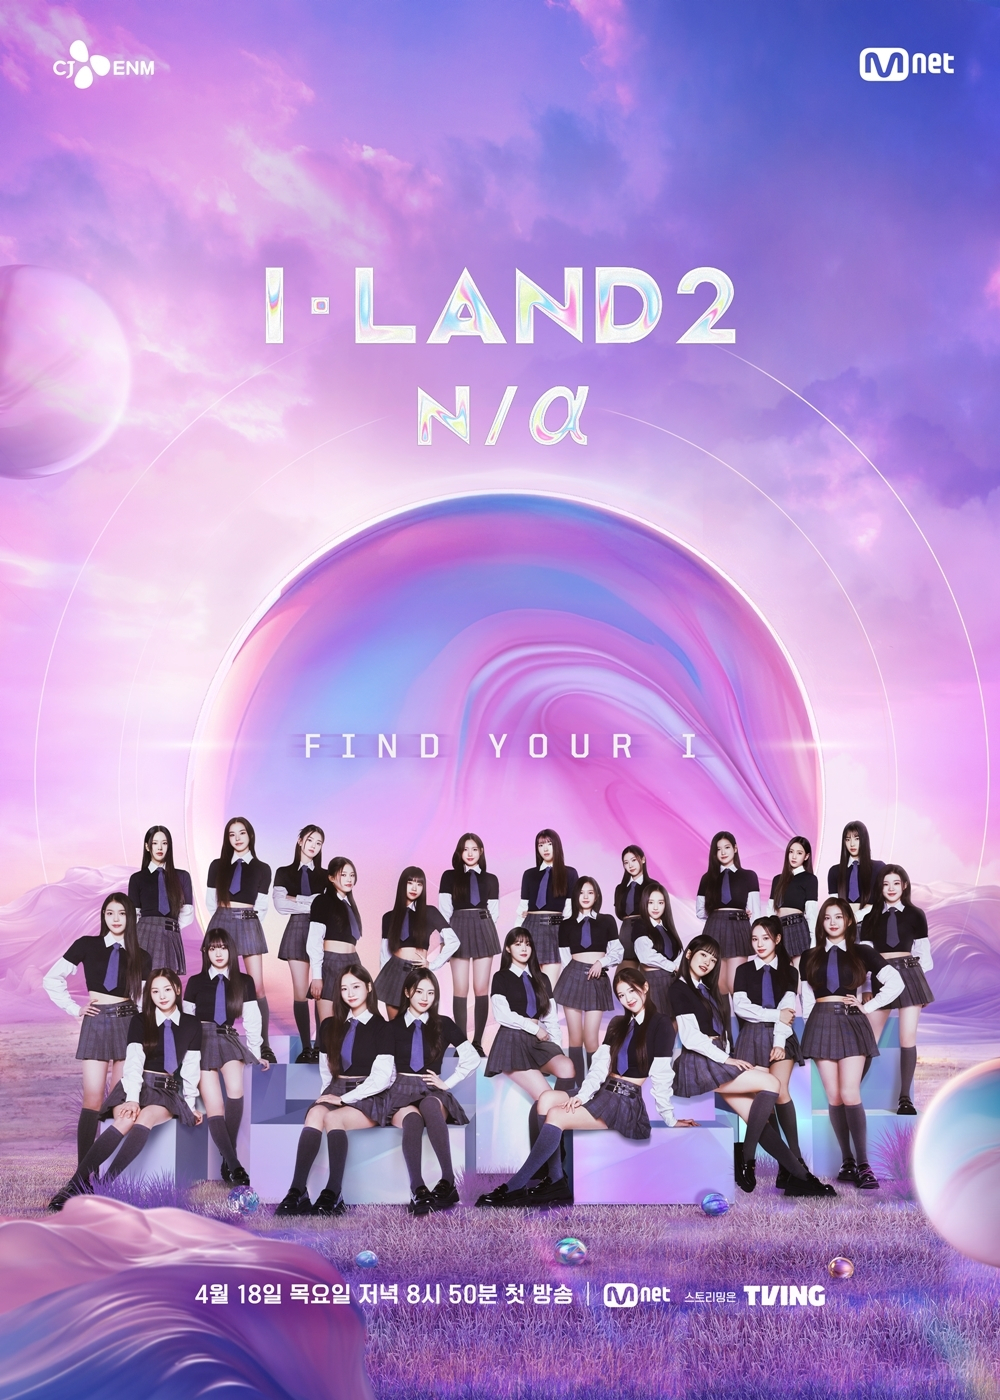 Poster for Mnet's K-pop audition program “I-Land2: N/a” (CJ ENM)